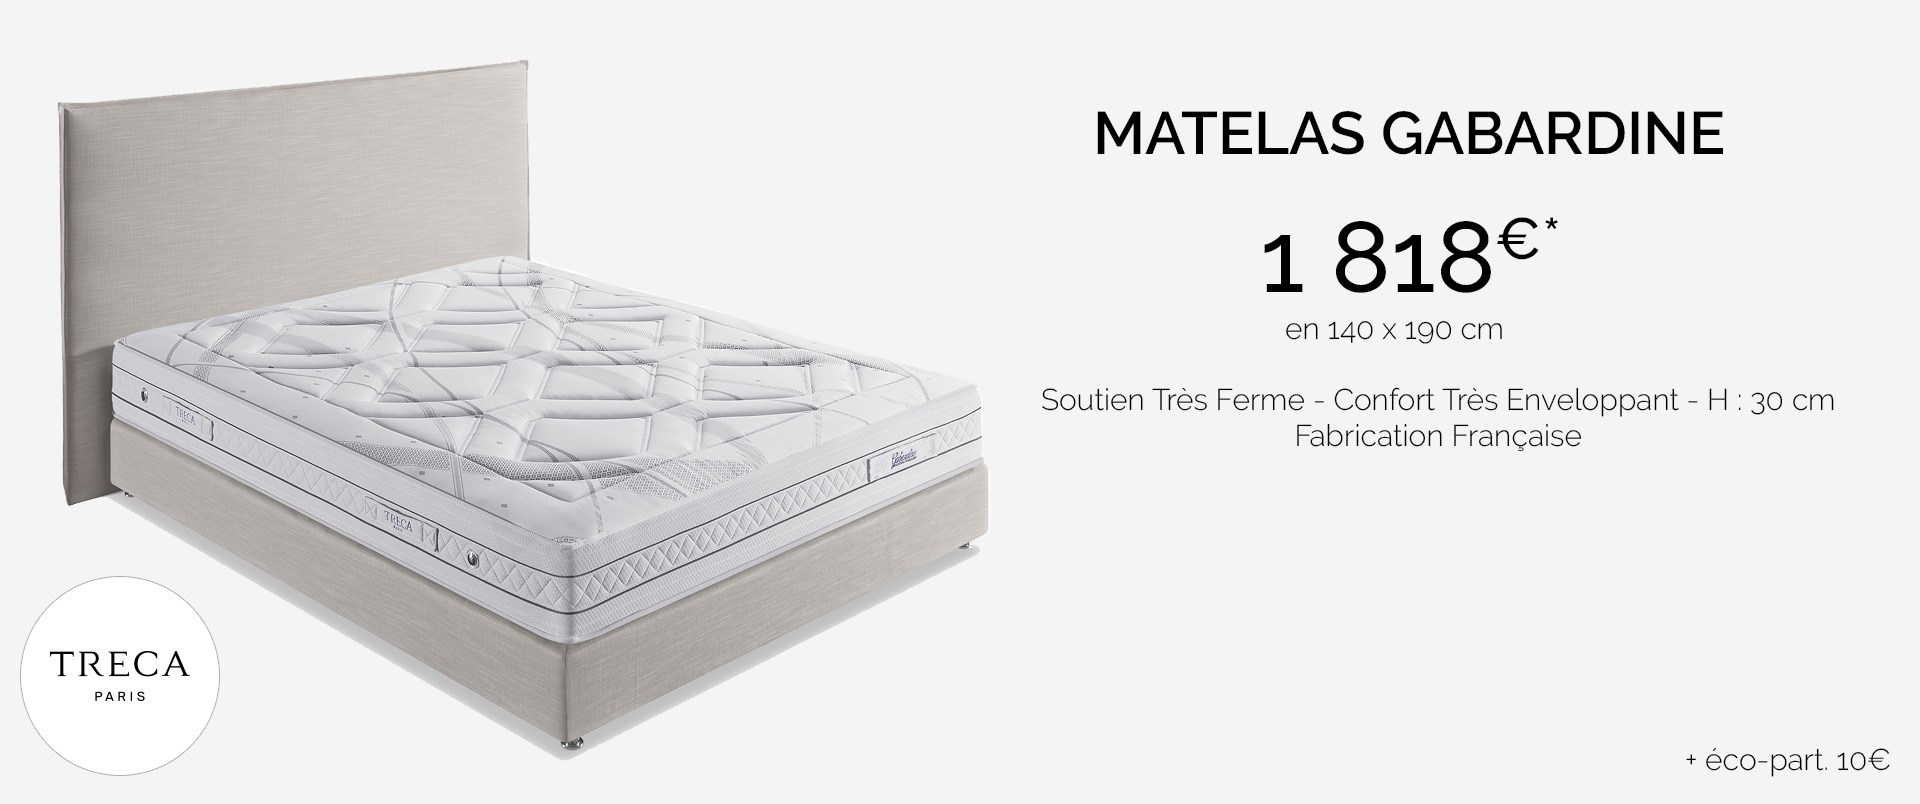 Treca matelas Gabardine Soutien Très Ferme - Confort Très Enveloppant - H : 30 cm Fabrication Française